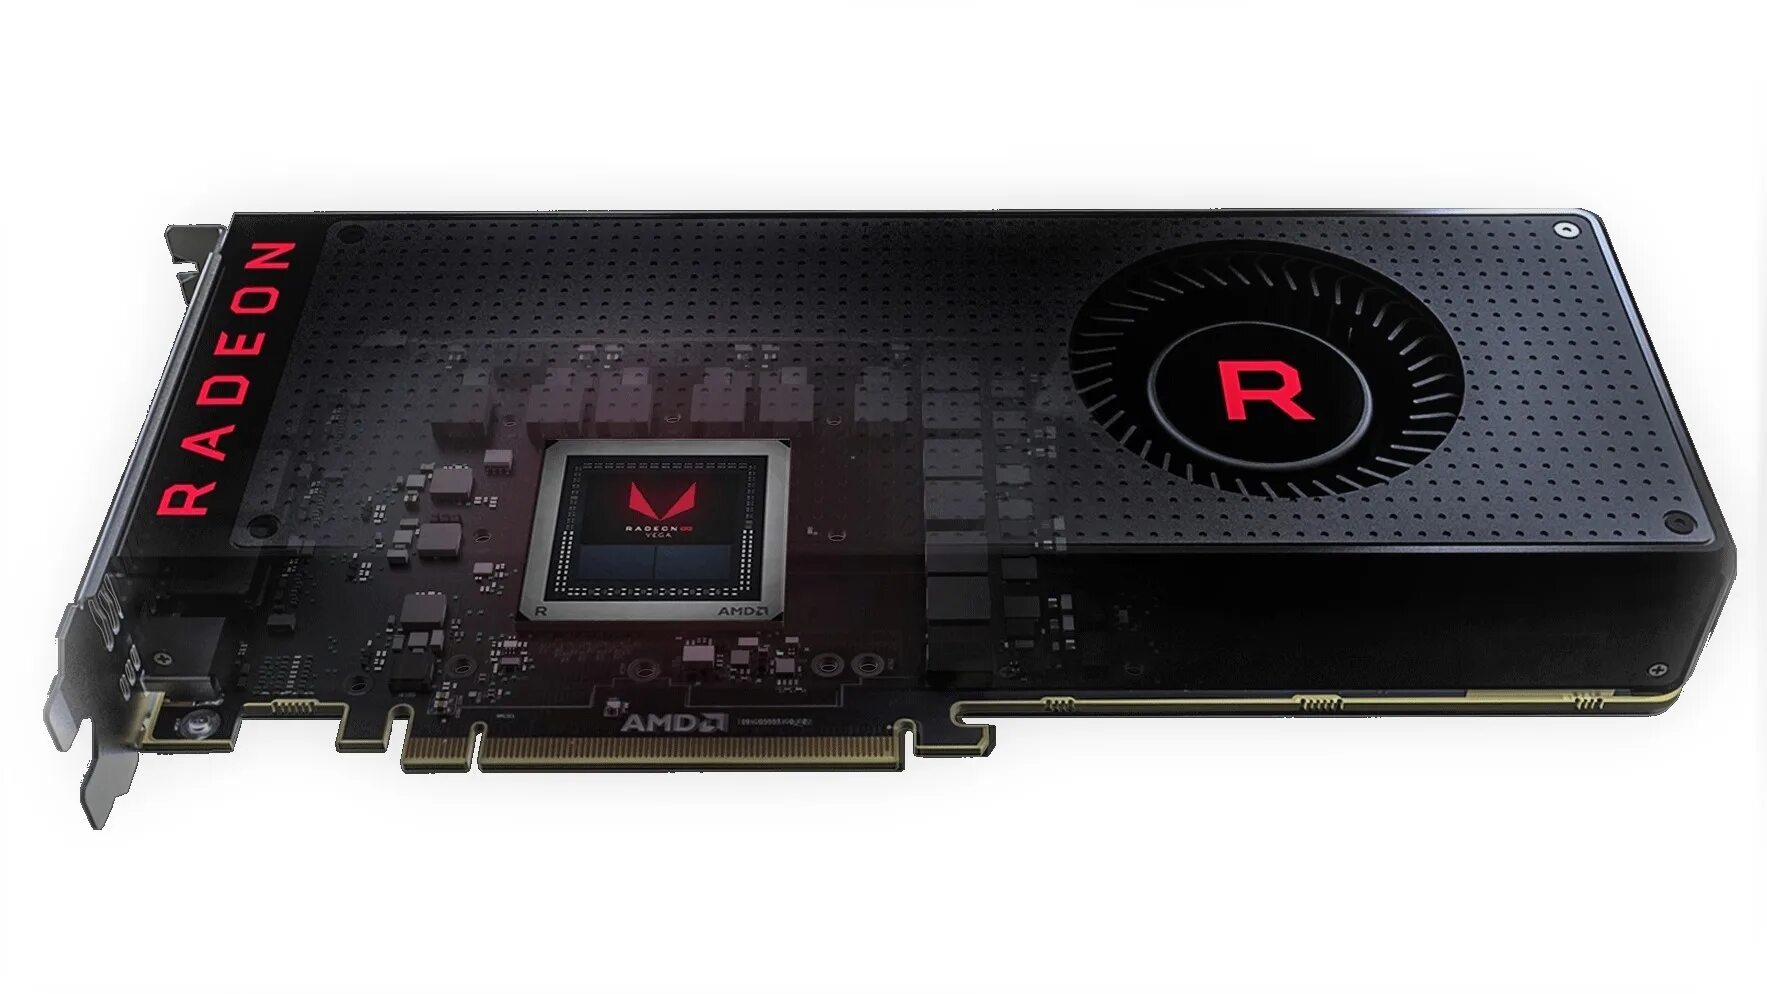 Graphics 8. AMD RX Vega 64 (8 GB). AMD Radeon RX Vega 7. AMD Vega RX видеокарта. AMD Radeon Vega 8 видеокарта.